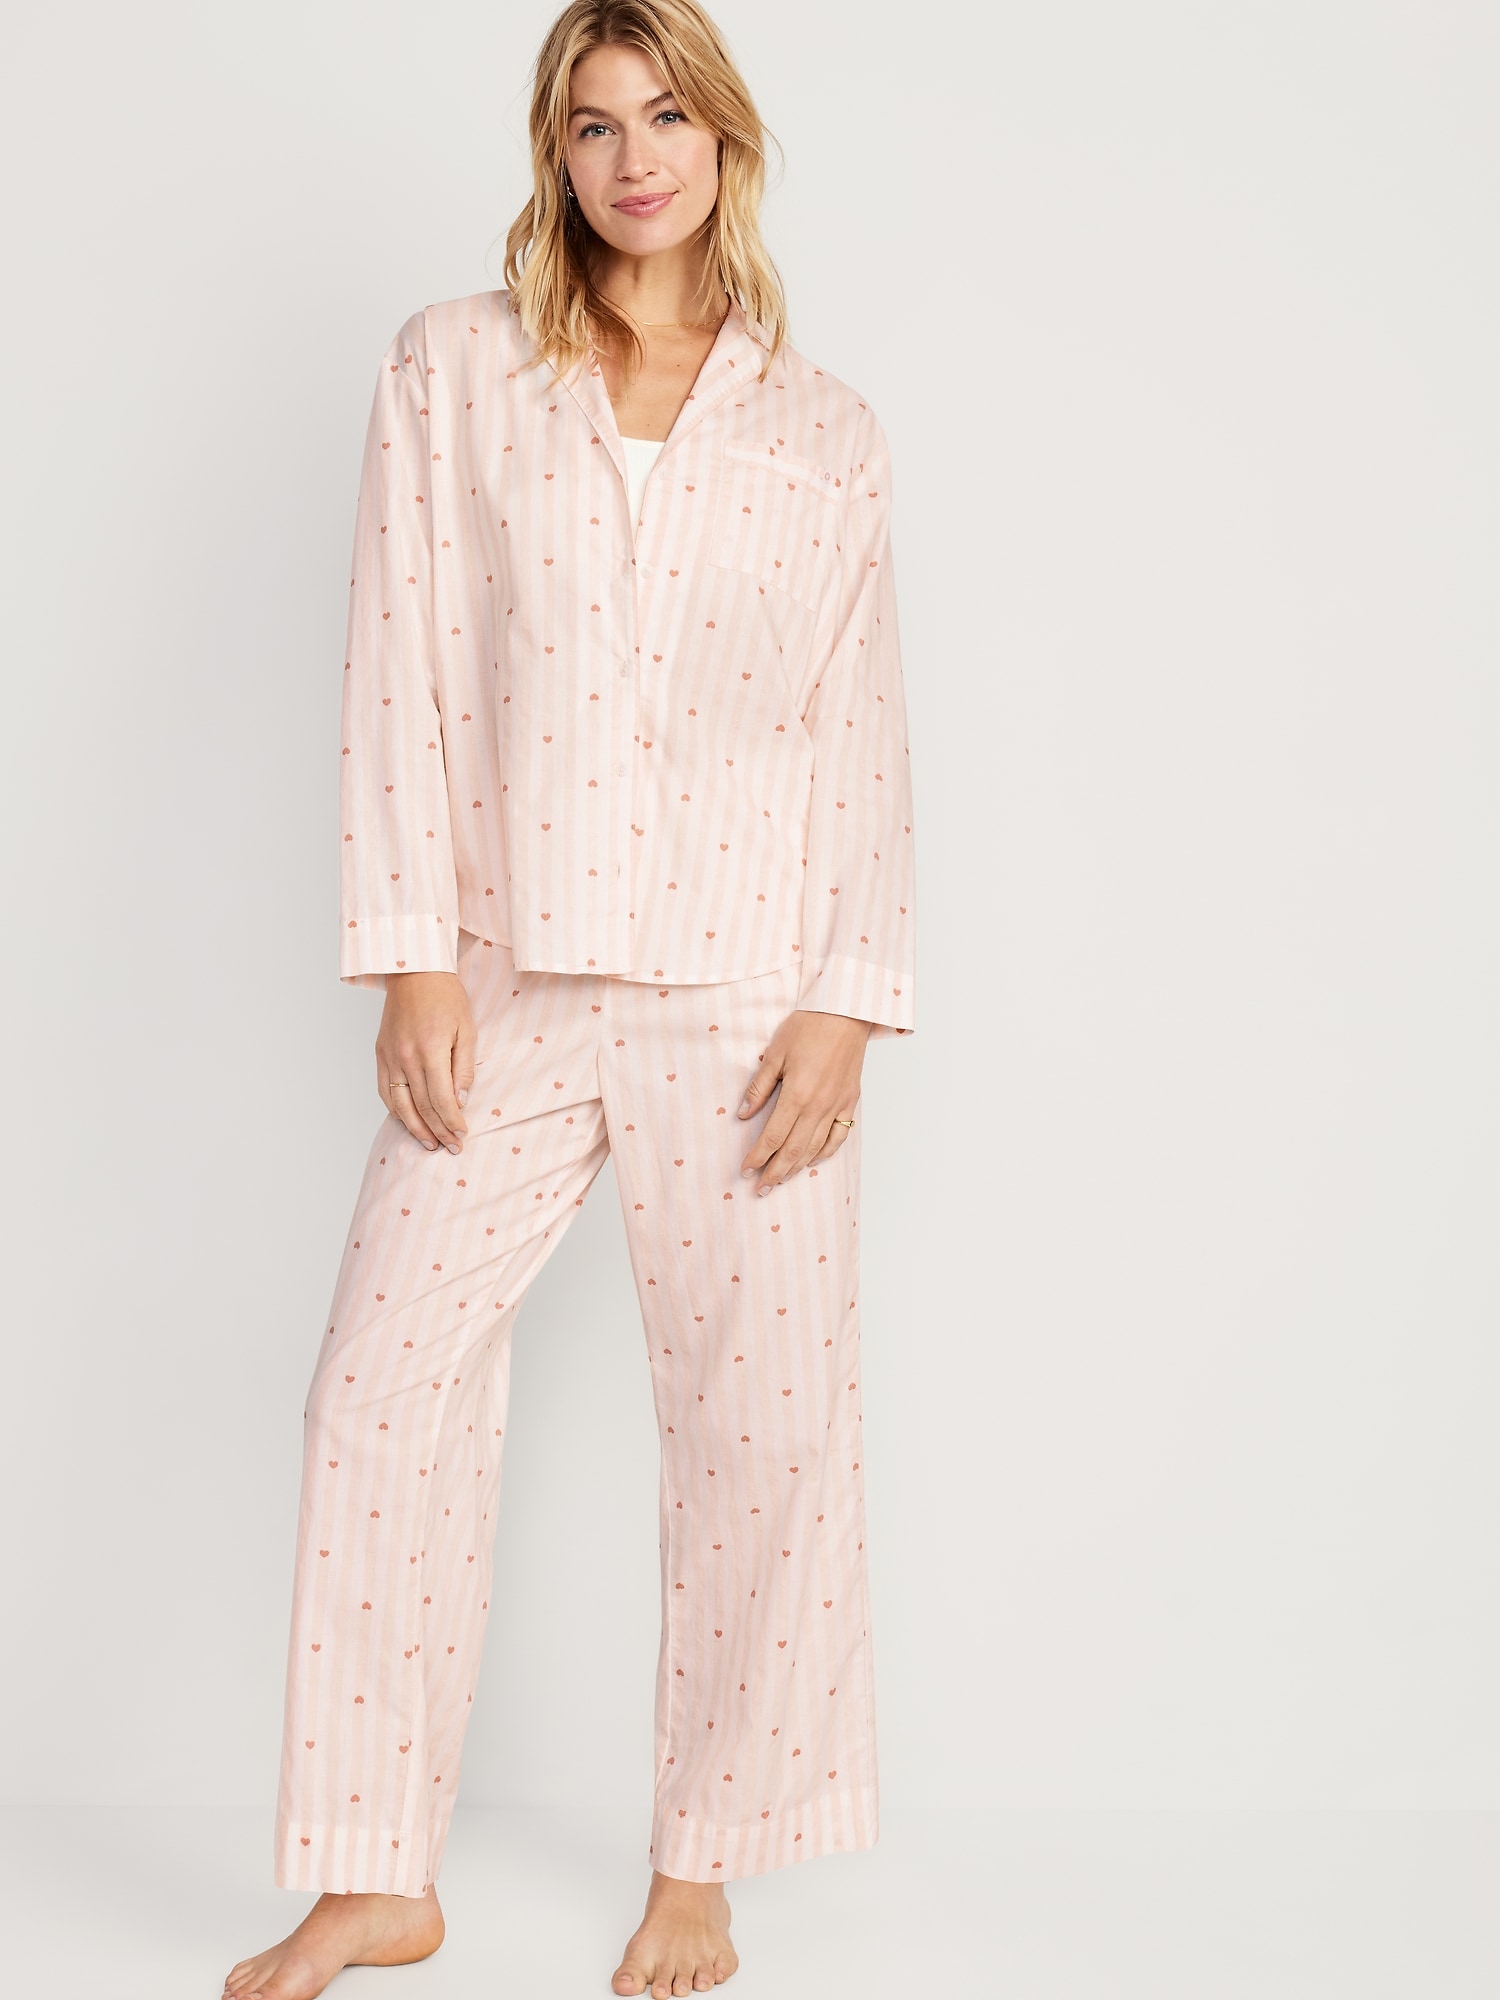 Women's Tall Pajamas, Pajamas for Tall Women